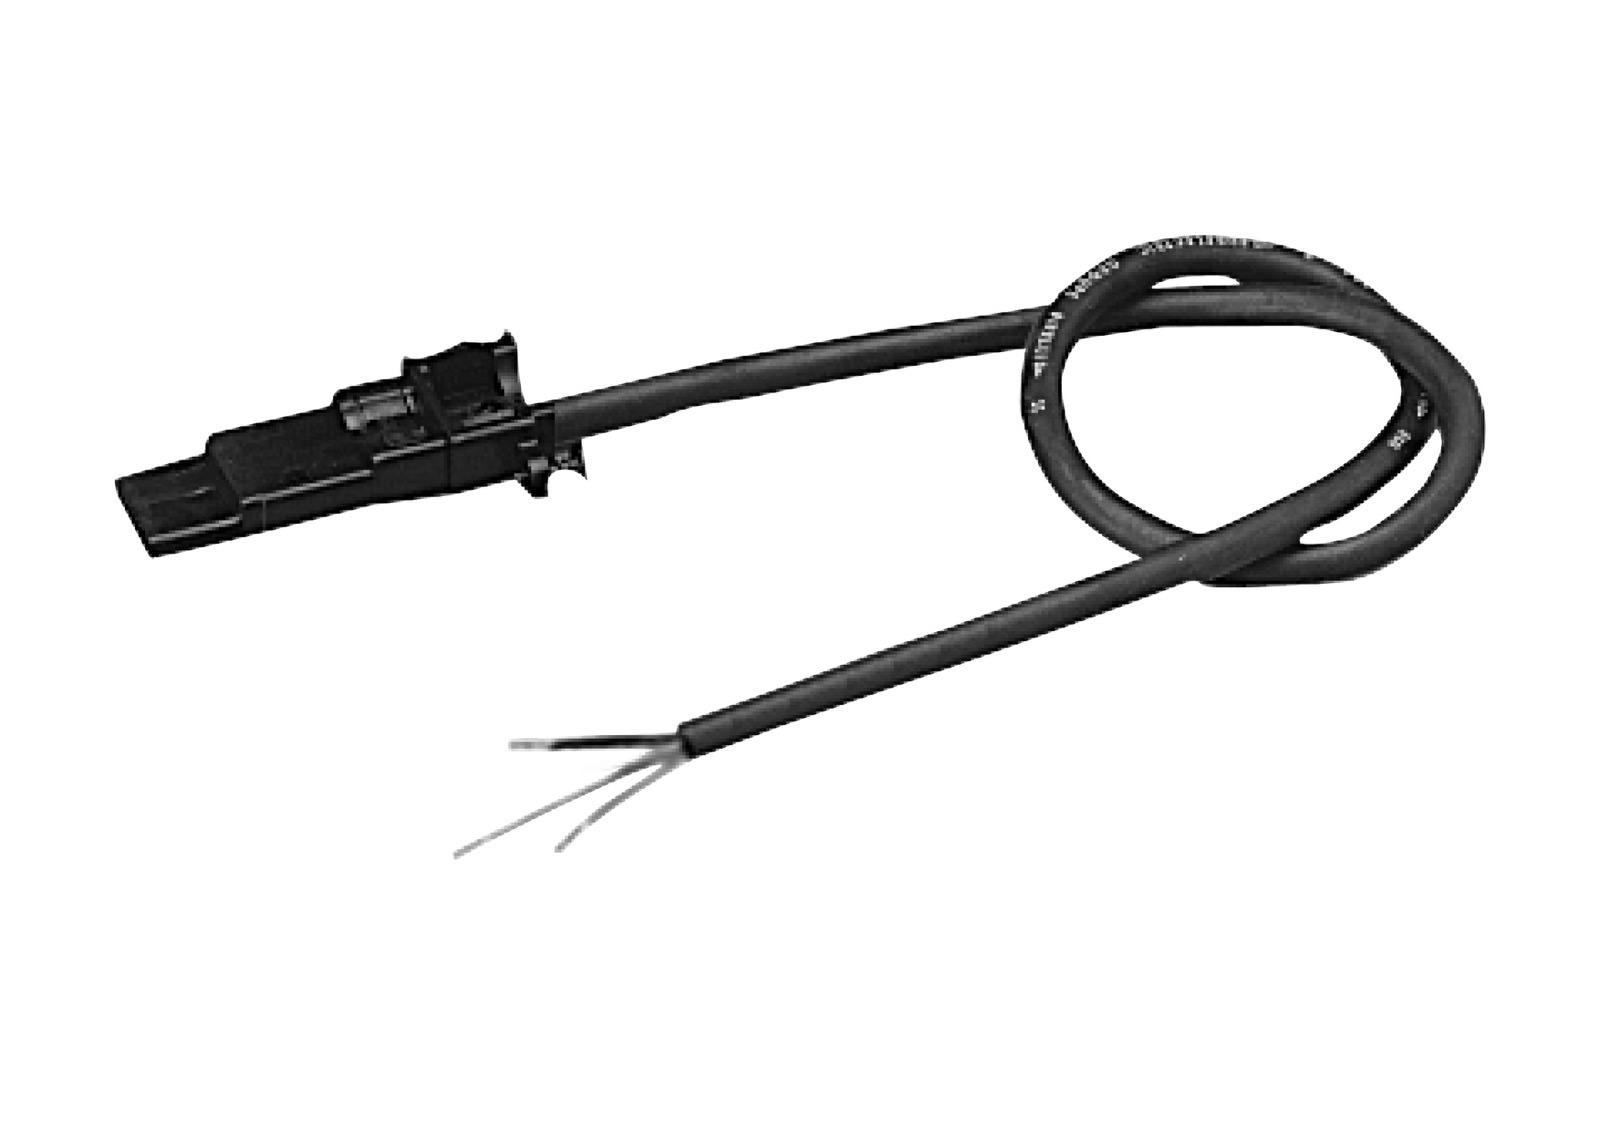 Somfy io / RTS Anschlusskabel (3-adrig) mit HiPro-Antriebsstecker, 3 m schwarz